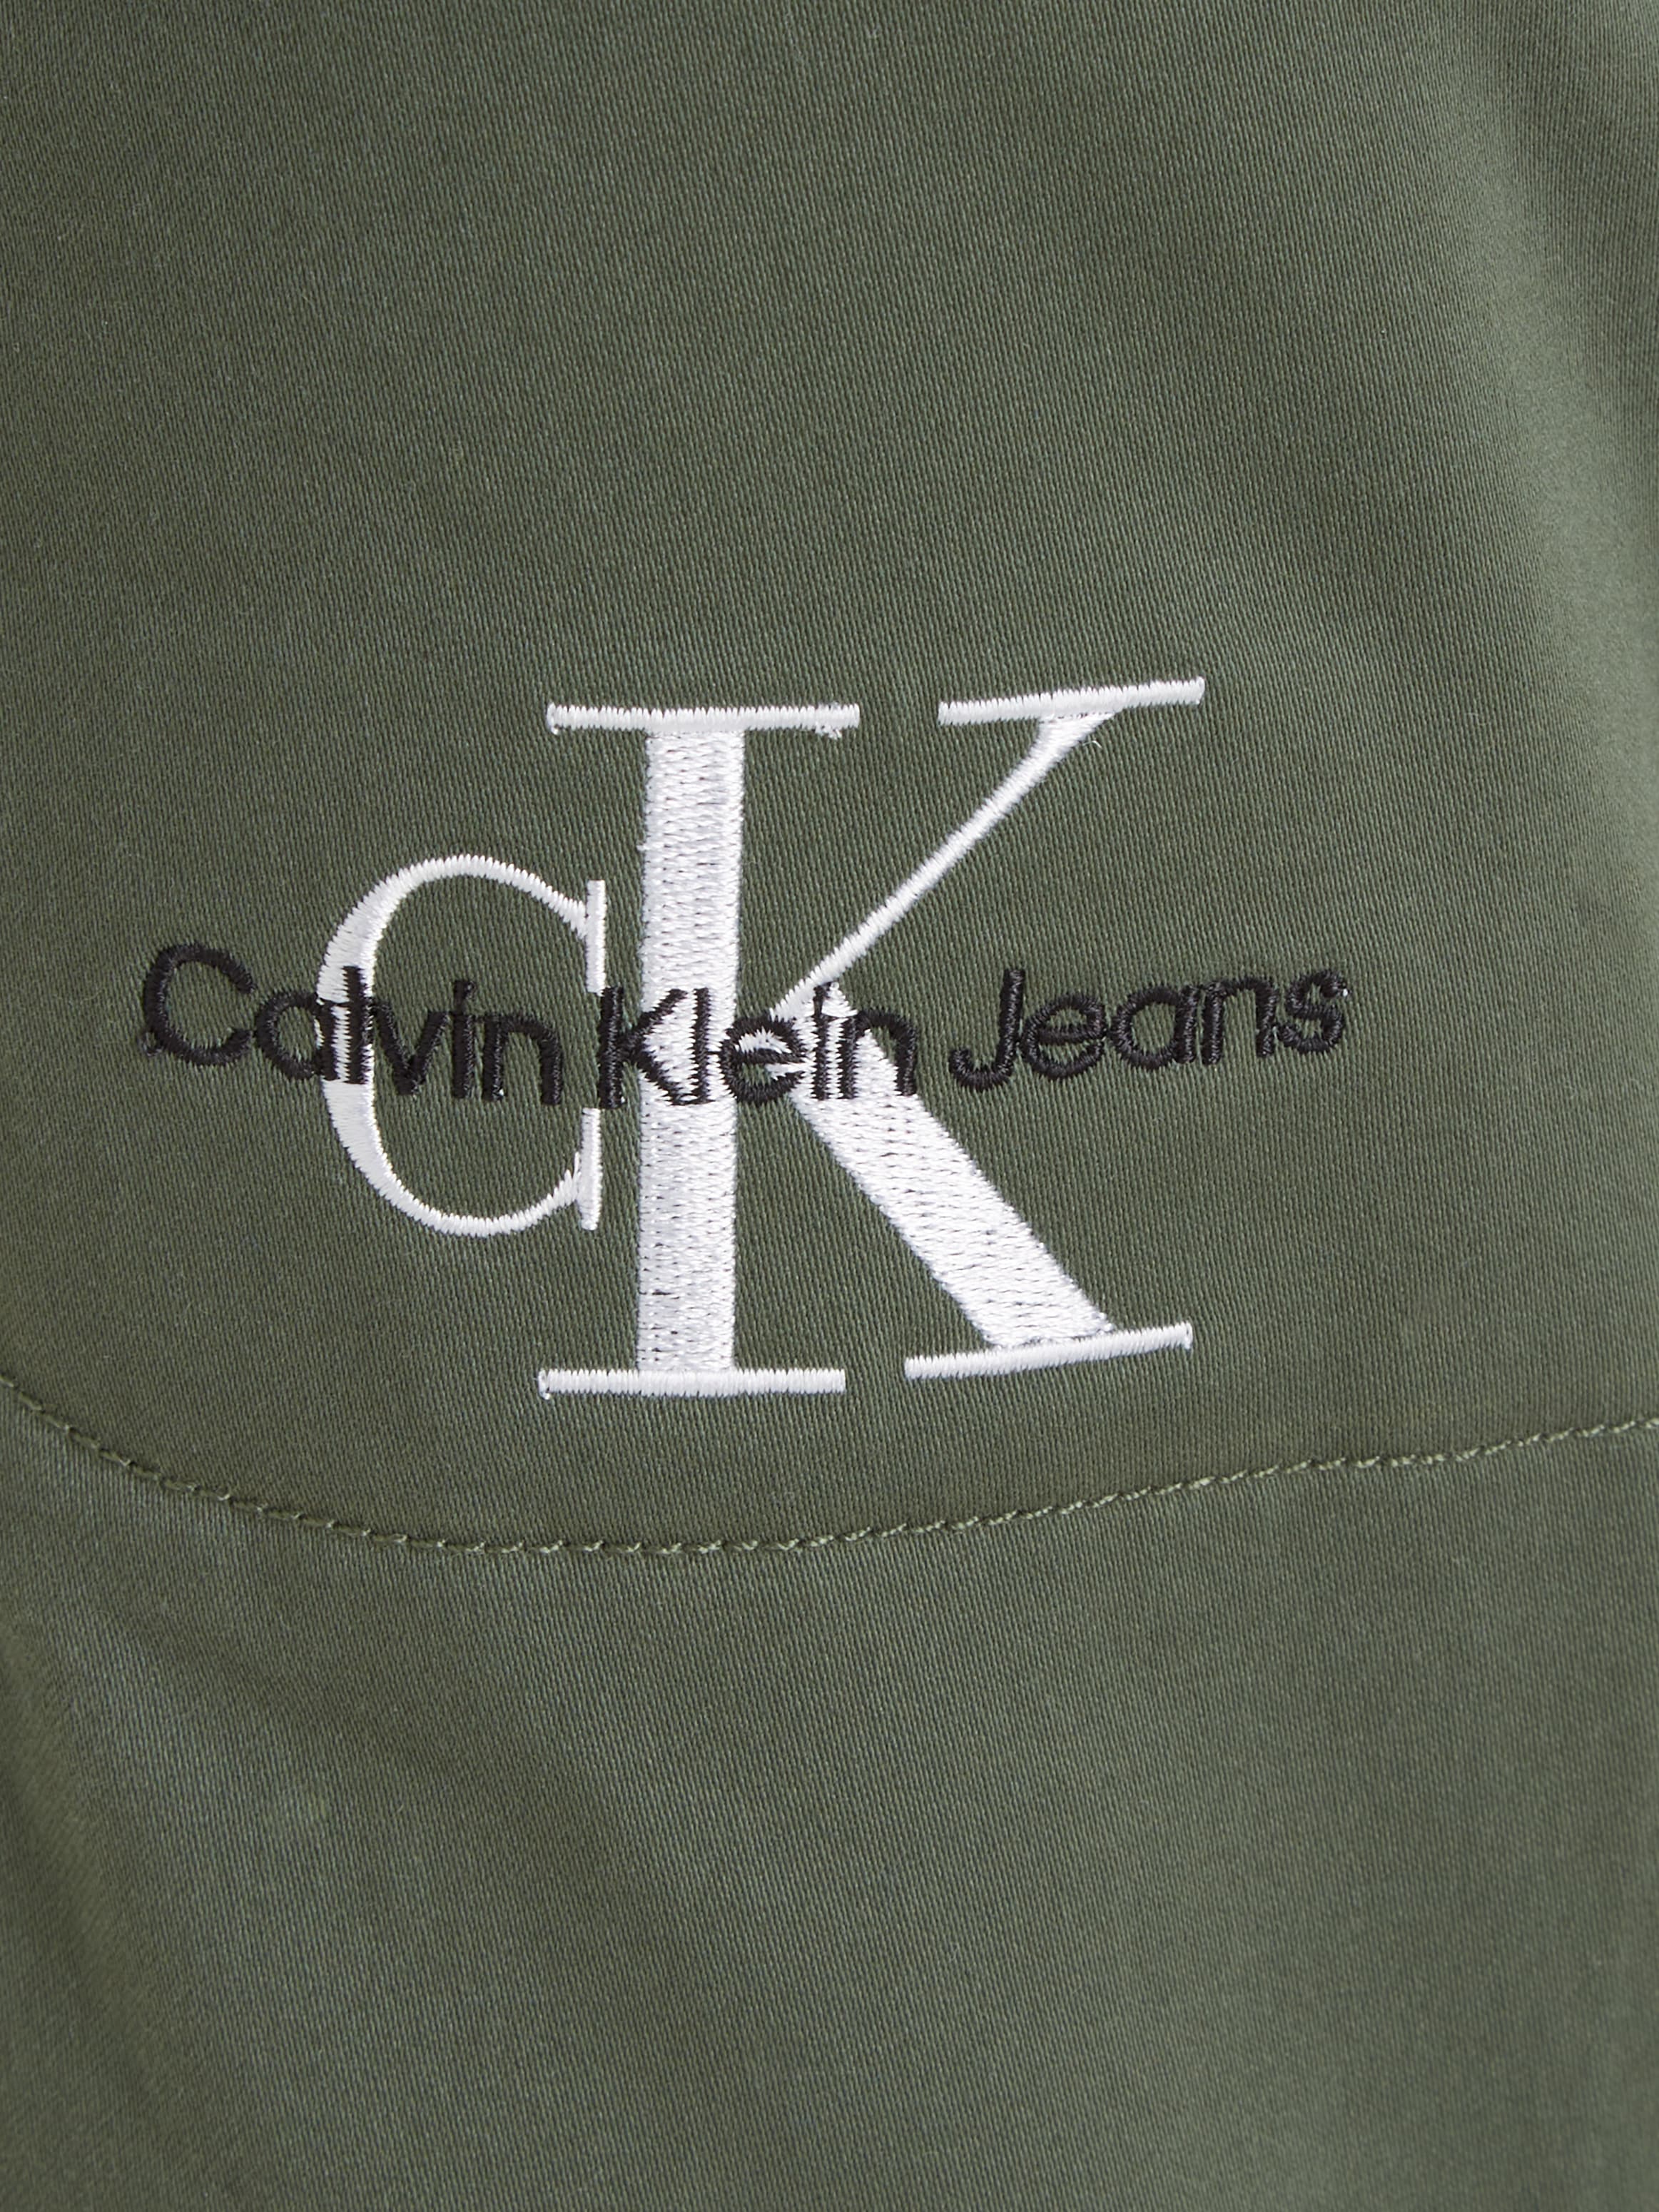 Calvin Klein Jeans Cargohose »SATEEN CARGO PANTS«, für Kinder bis 16 Jahre